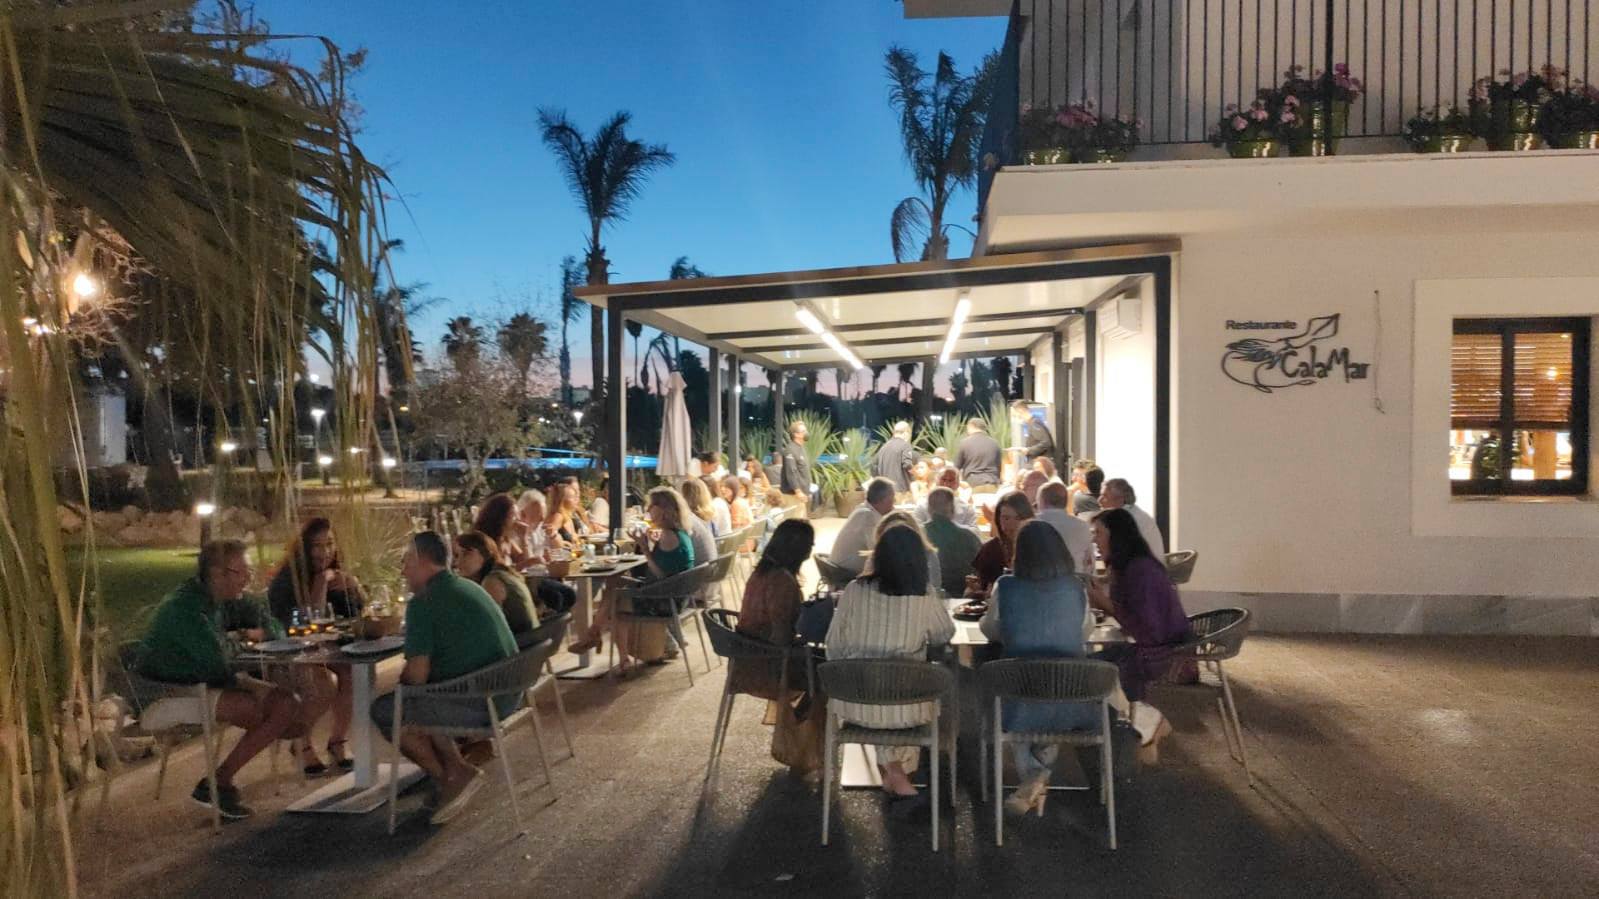 Los vales de descuento en bares, restaurantes y también en tiendas pronto estarán disponibles en la provincia de Cádiz.